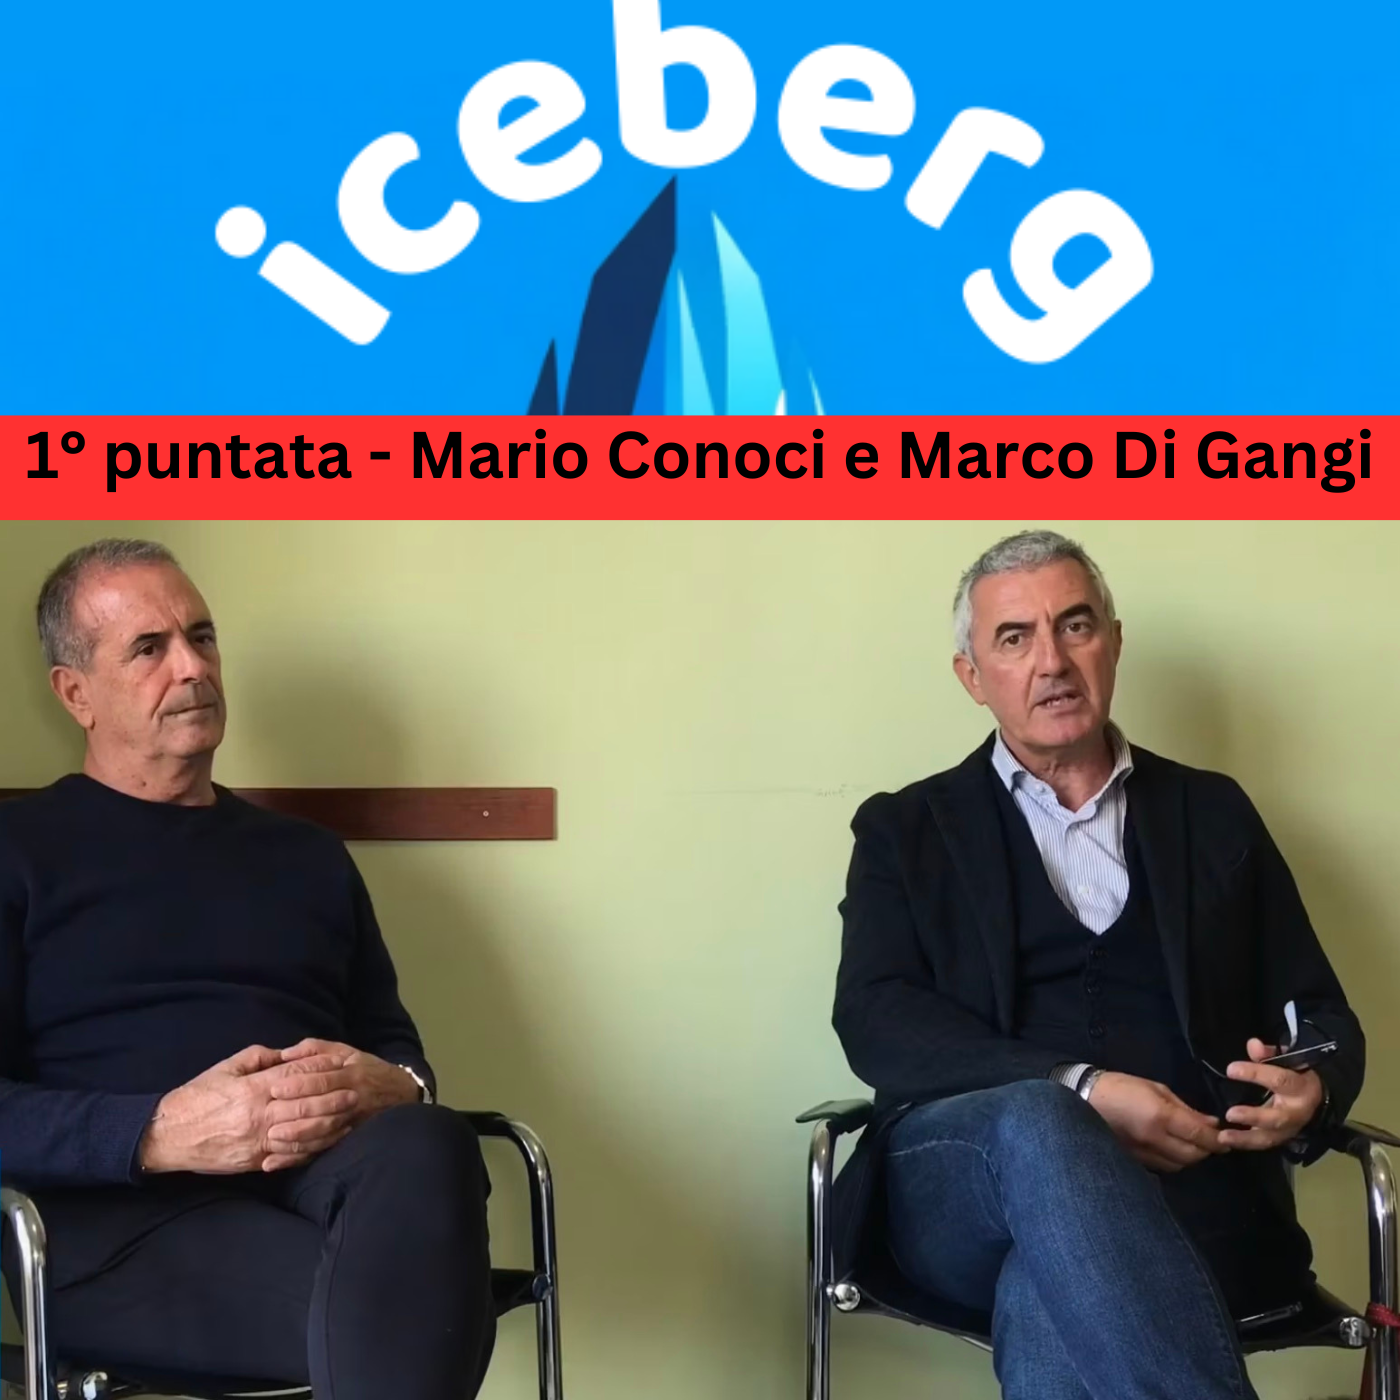 Iceberg24, Marco Di Gangi e Mario Conoci